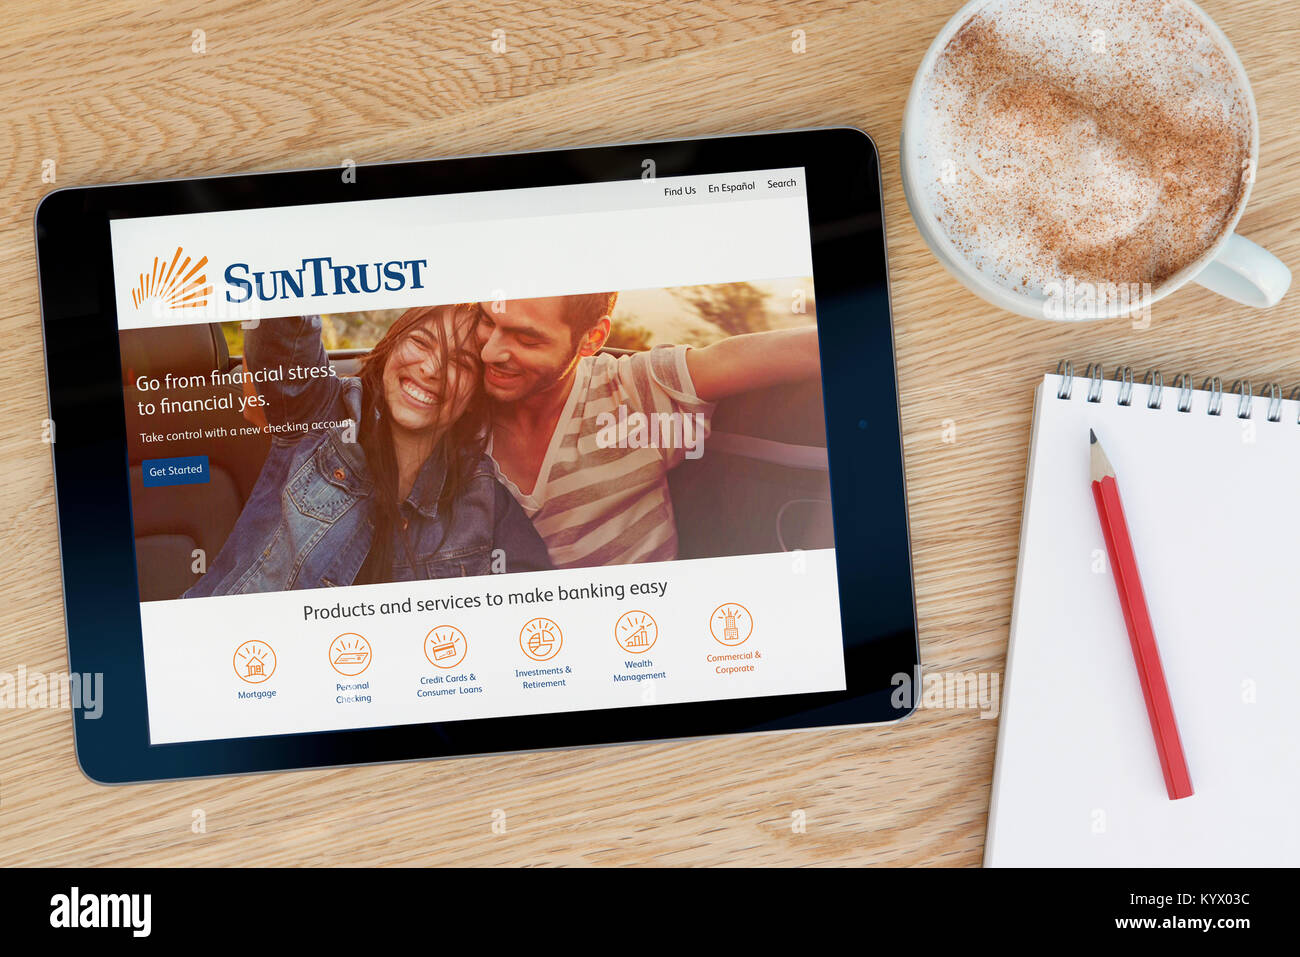 Le SunTrust Banks Site internet sur une tablette iPad, sur une table en bois à côté d'un bloc-notes, crayon et tasse de café (rédaction uniquement) Banque D'Images